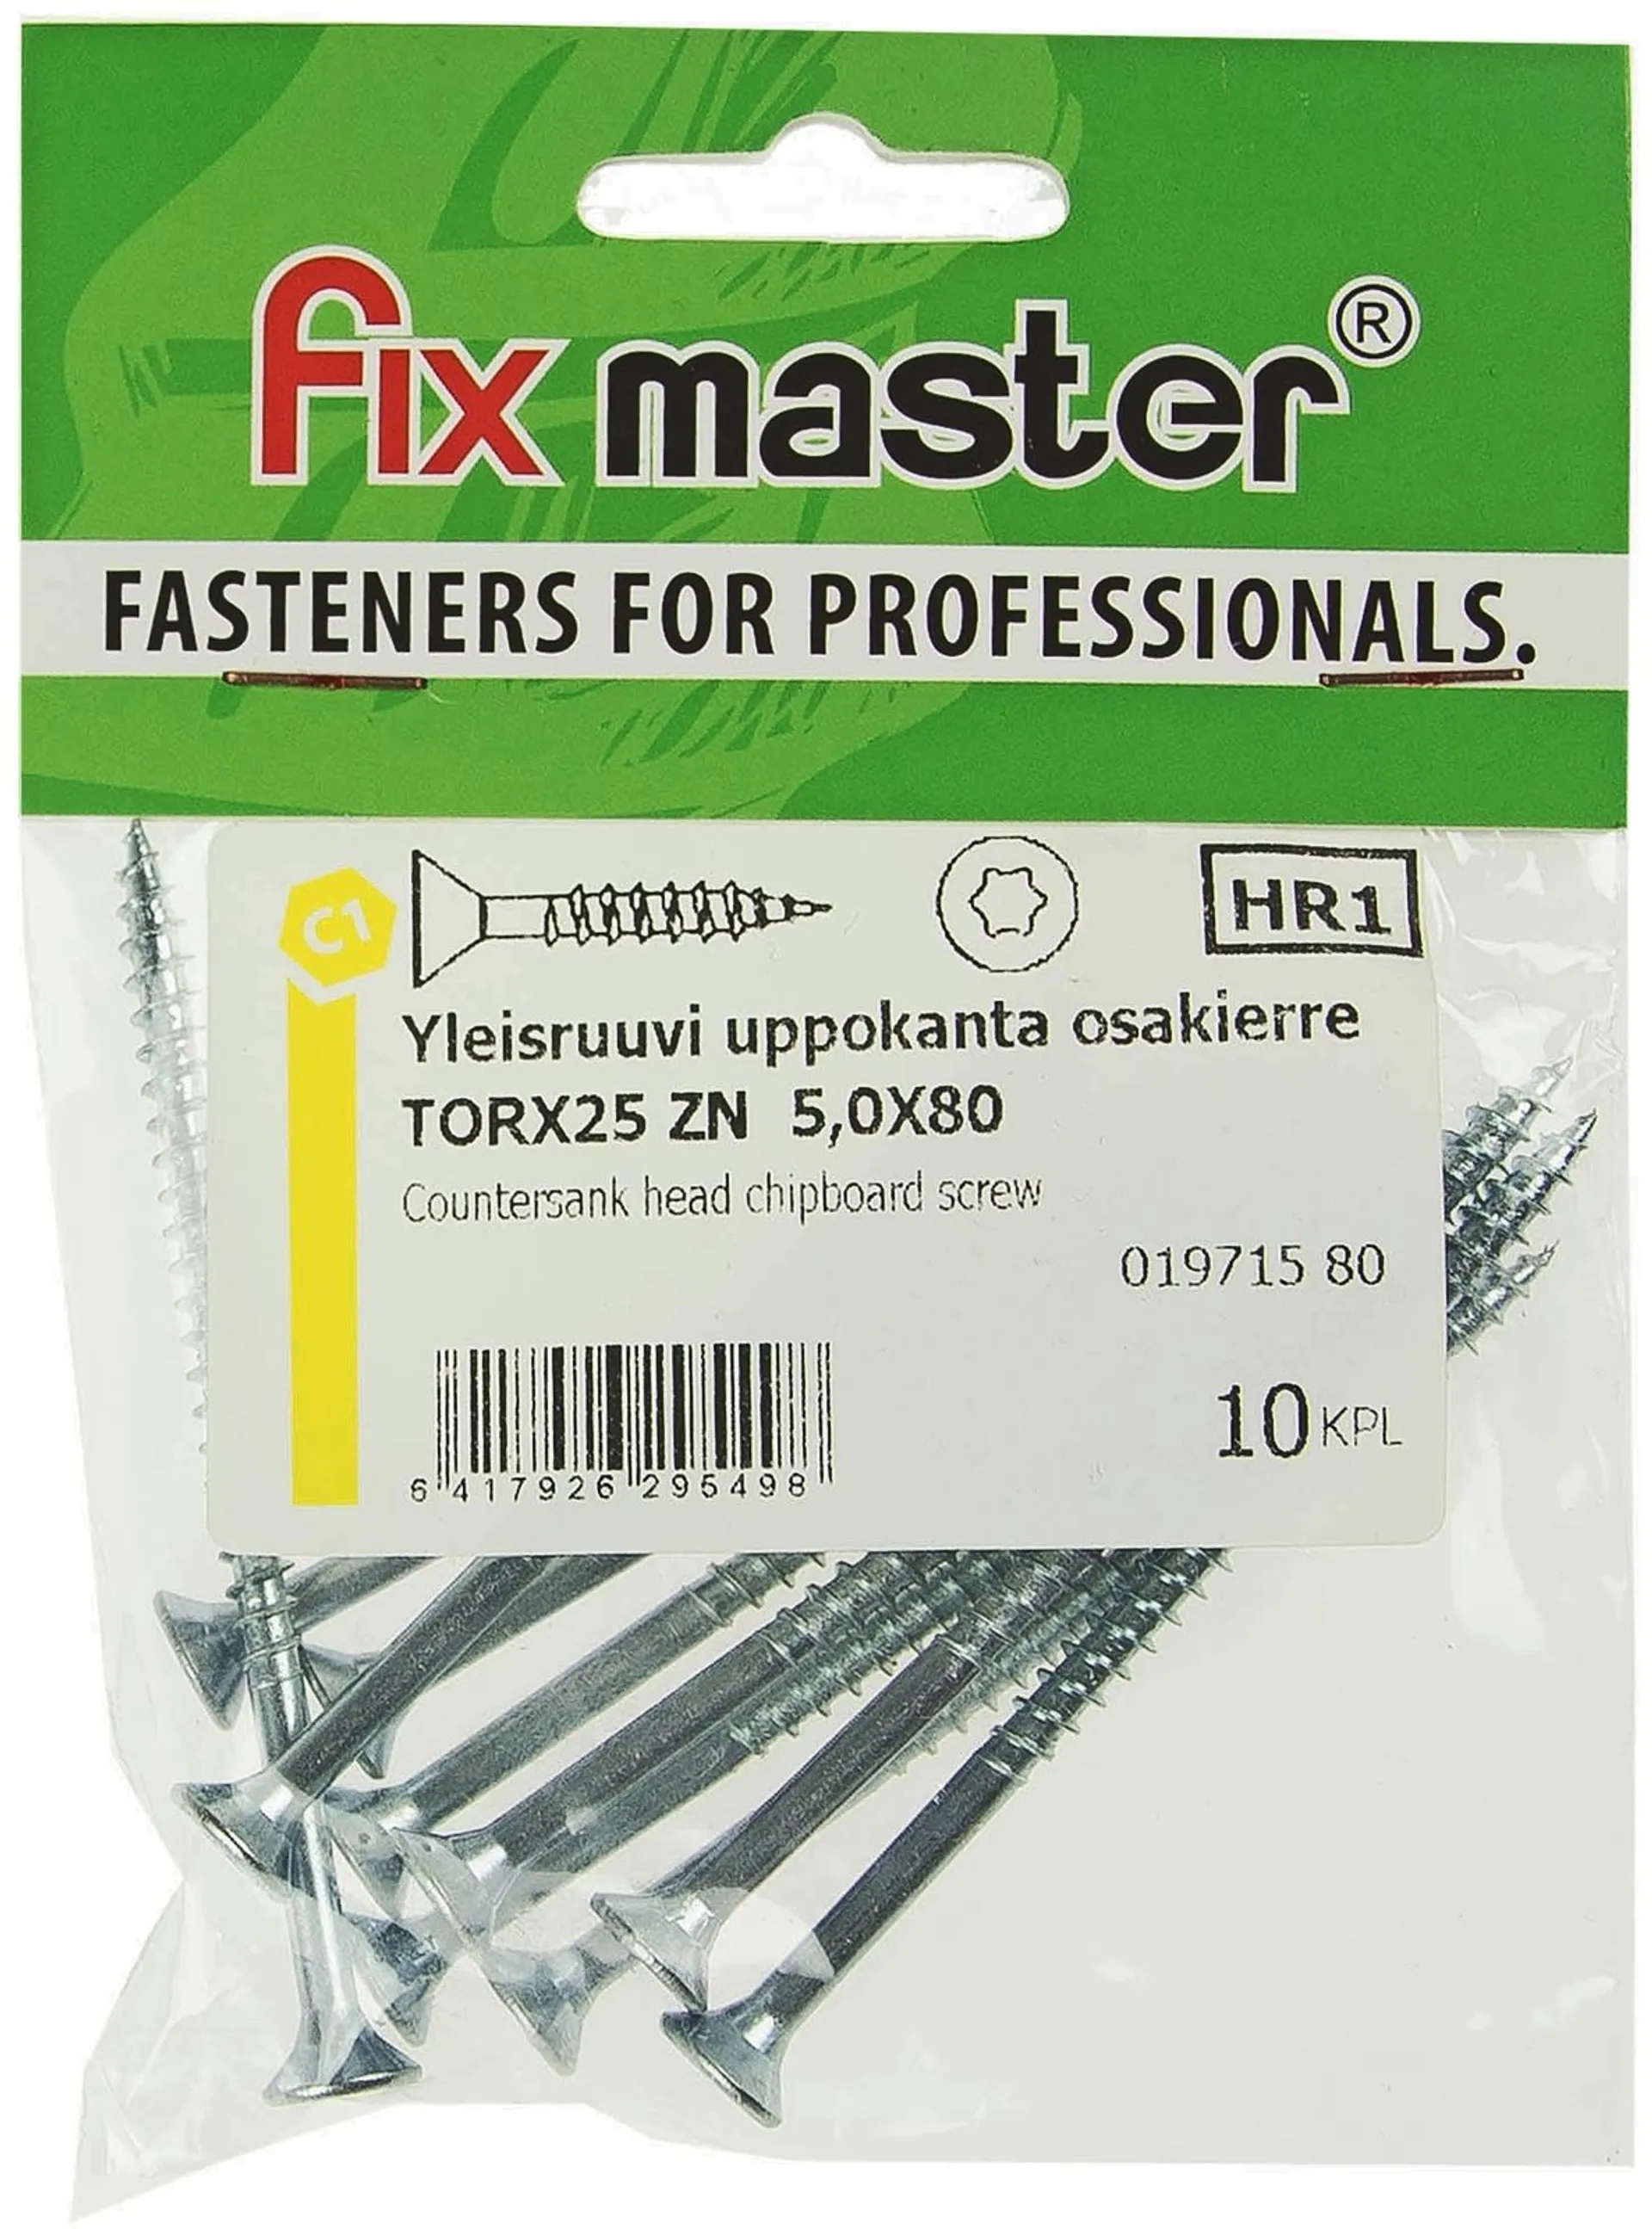 Fix Master yleisruuvi uppokanta osakierre 5X80 torx25 sinkitty 10kpl